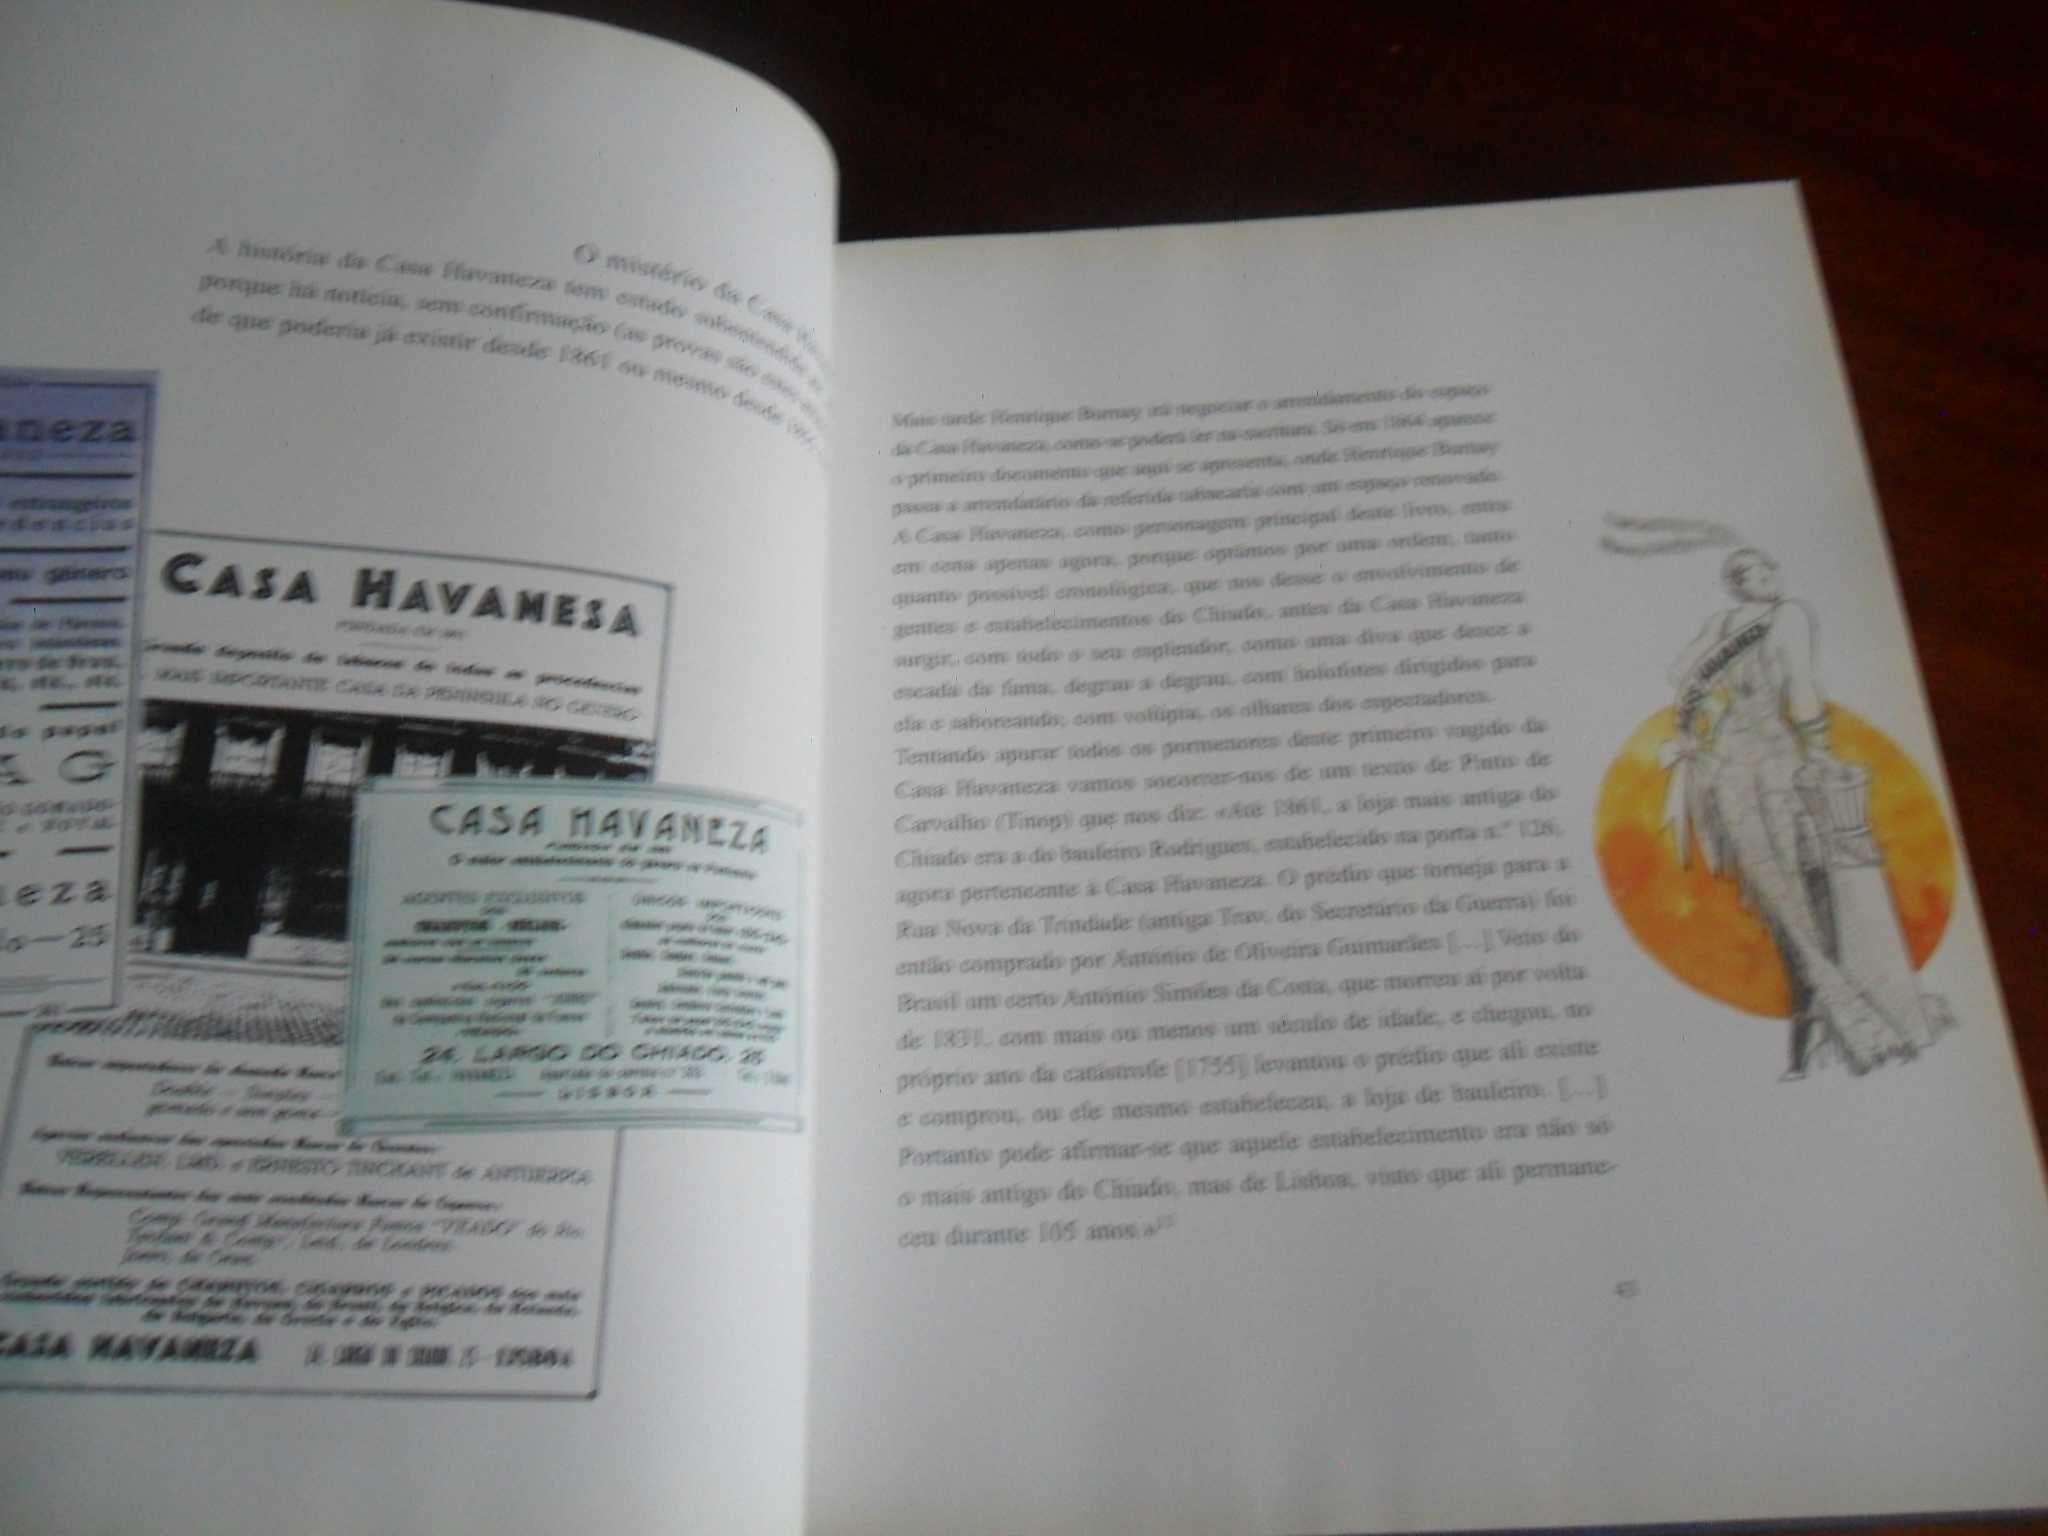 "Casa Havaneza" - 140 Anos À Esquina do Chiado de Luísa V. Paiva Boléo